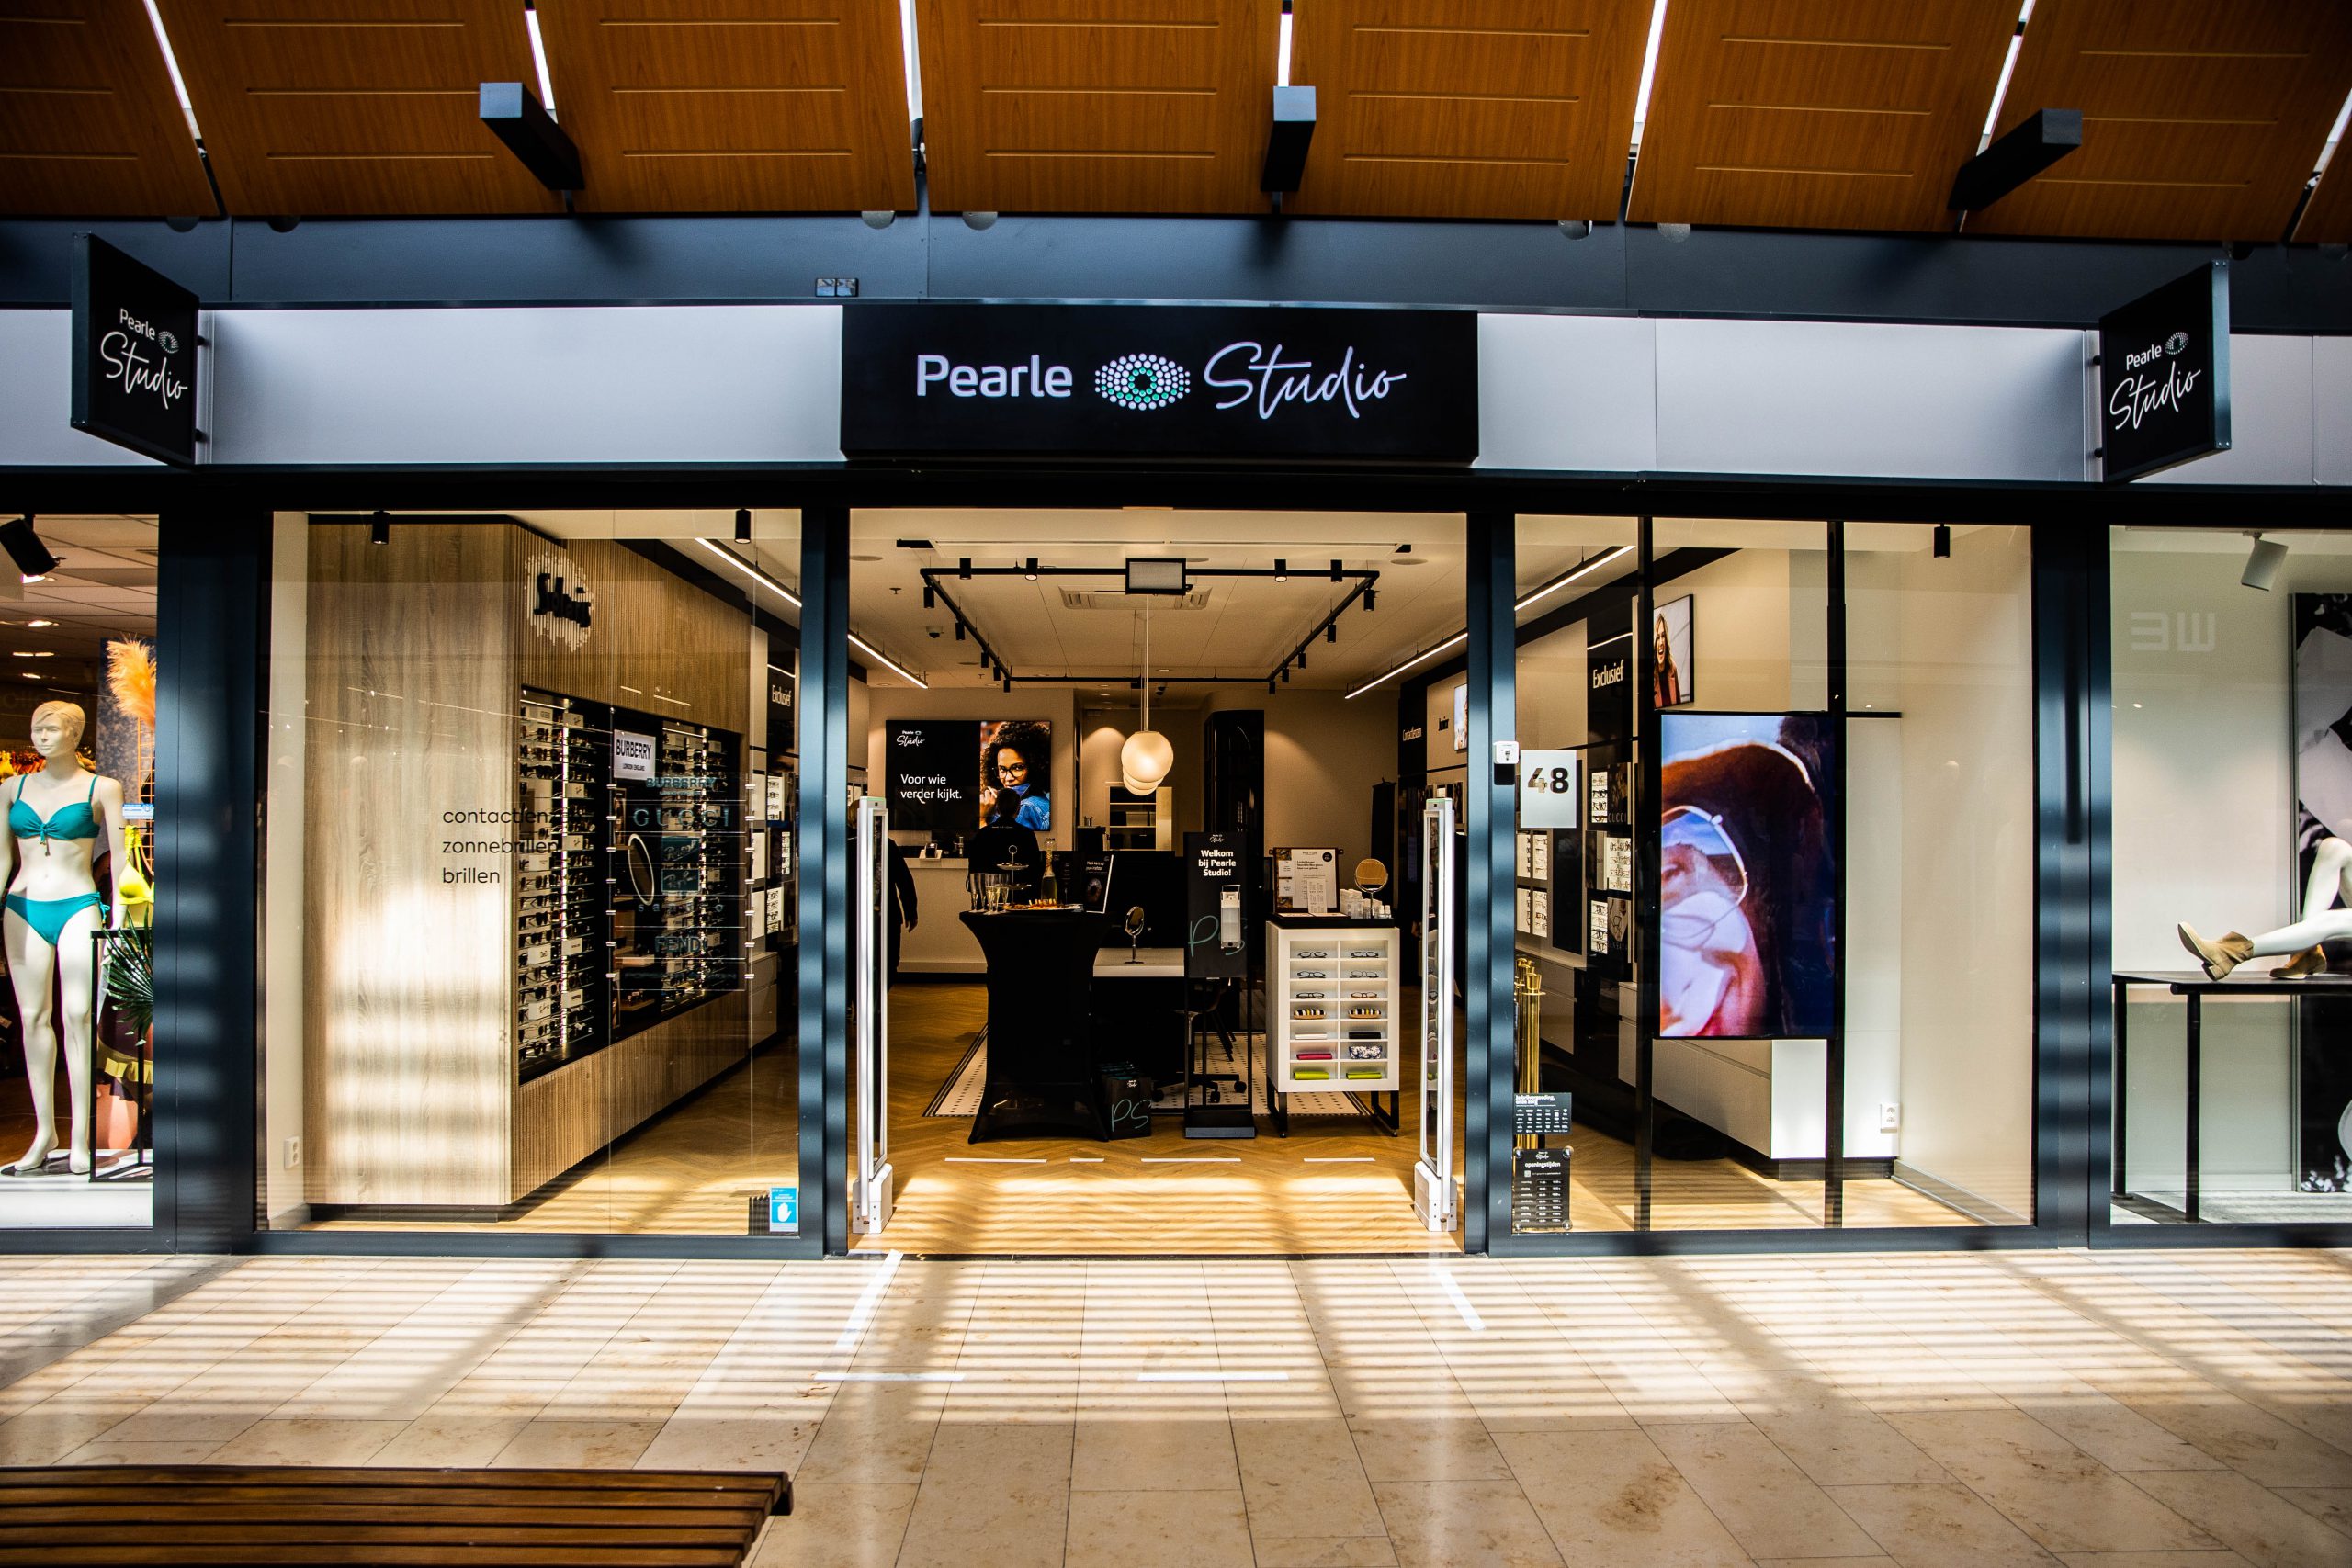 Correlaat Verlammen ventilator Nieuwe winkelformule Pearle Studio geopend op Cityplaza - De Digitale Stad  Nieuwegein